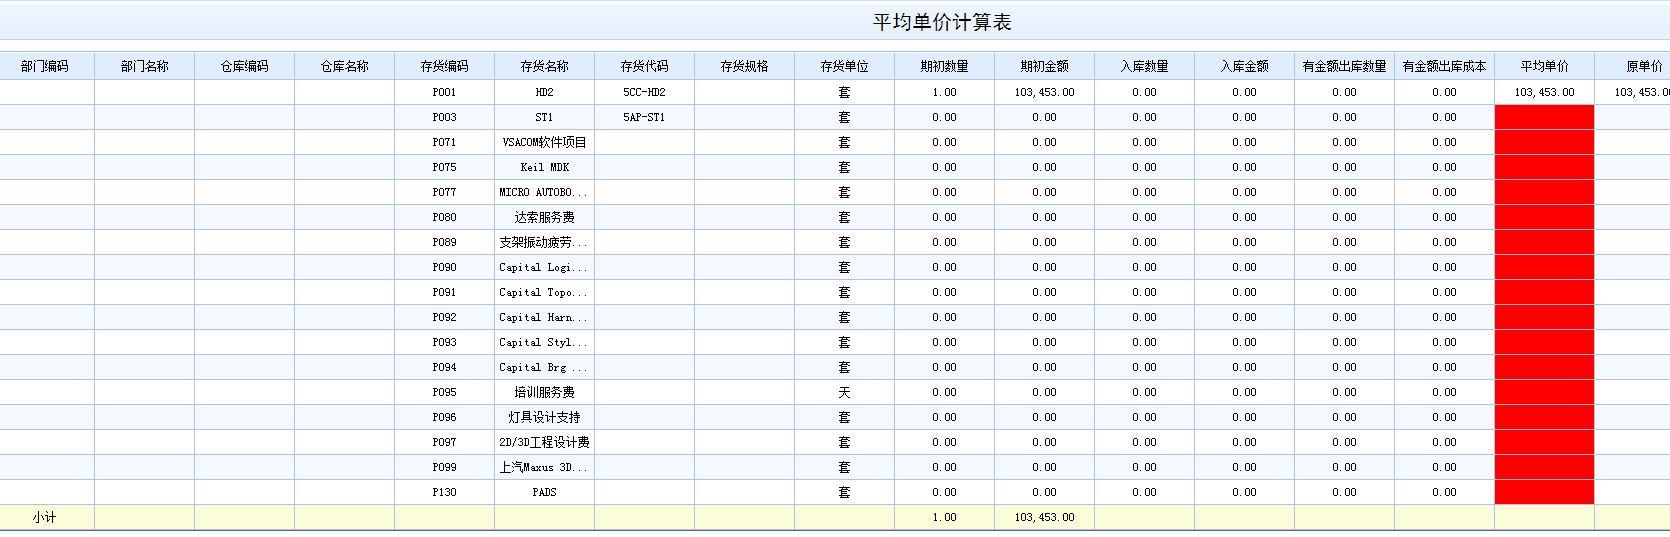 永春正版用友u9软件价格
:柠檬云财务软件年多少钱